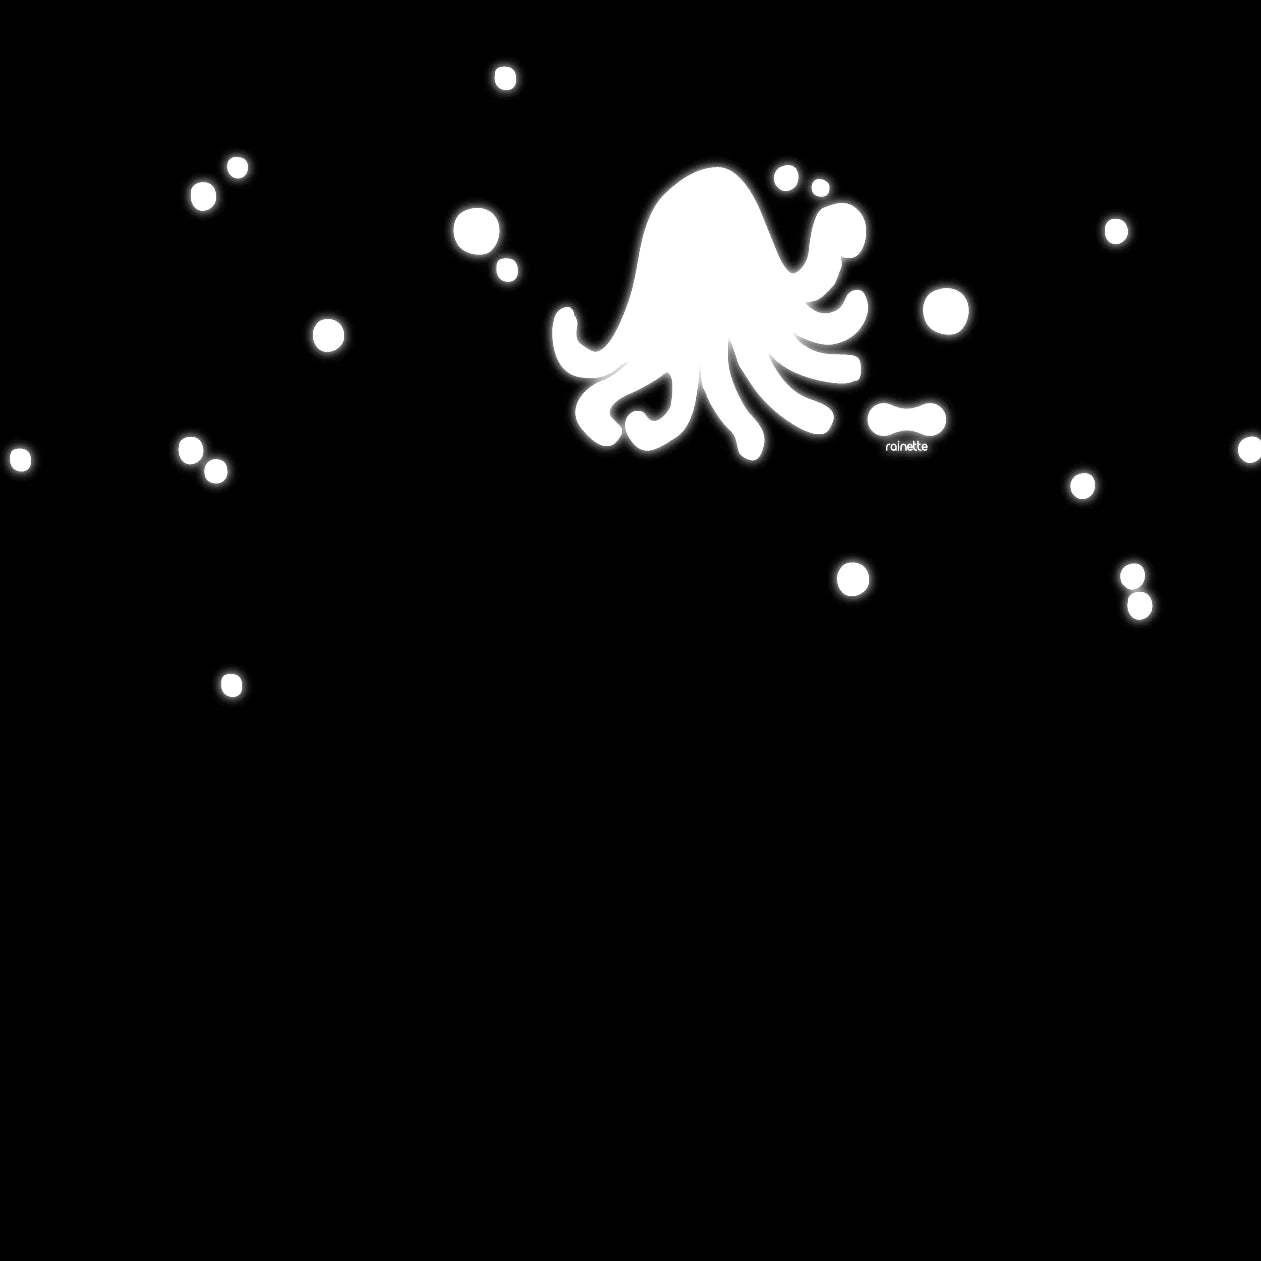 Stickers réfléchissants Rainette Petite Planche - Octopus